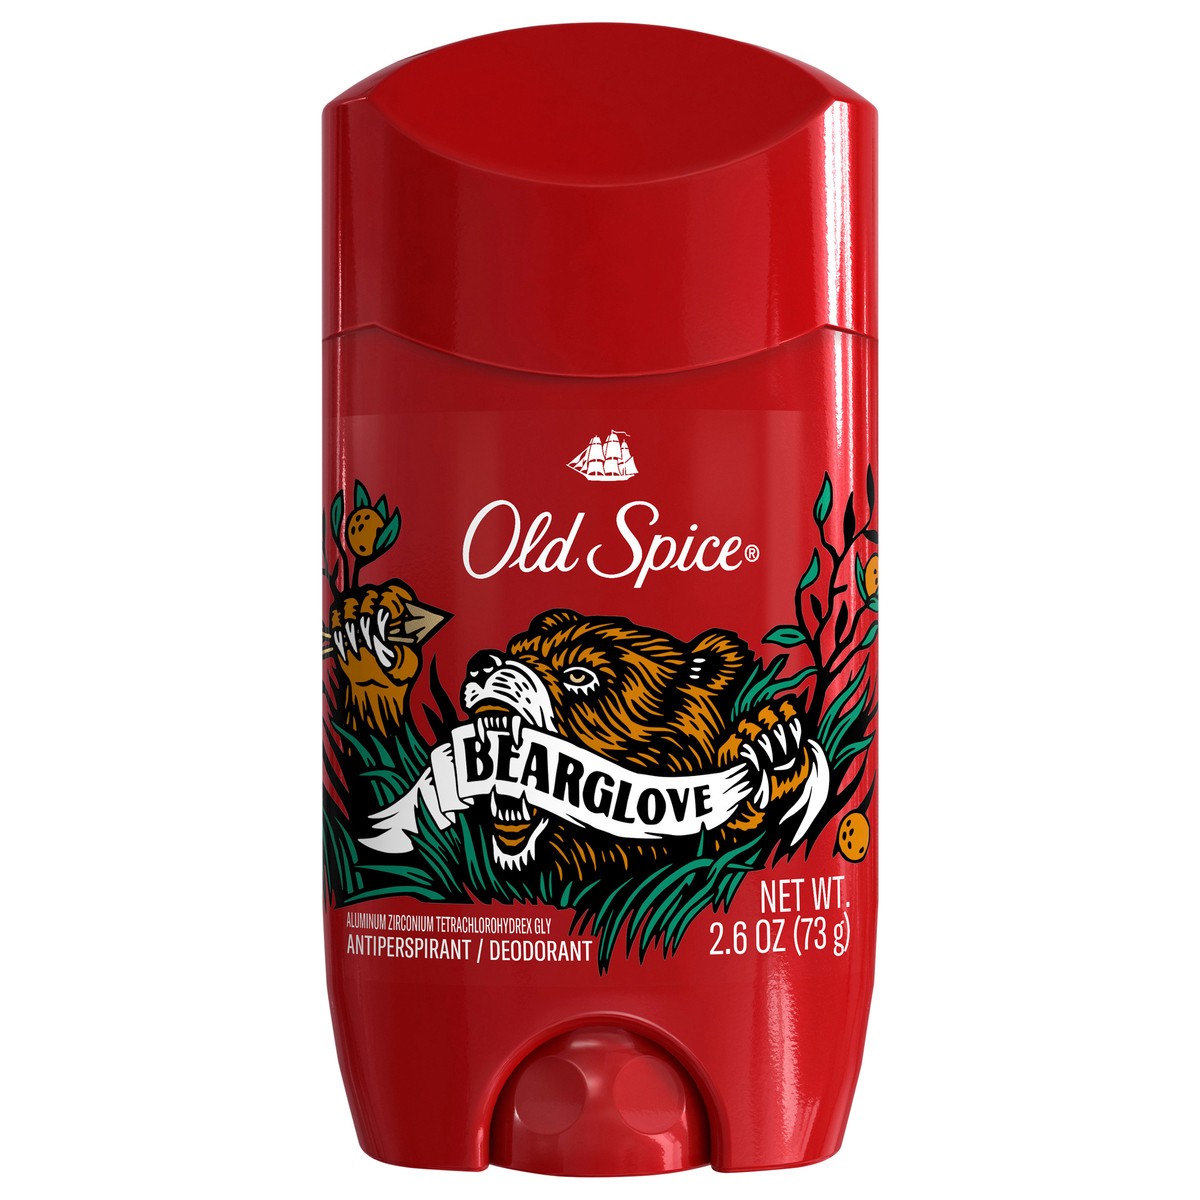 slide 1 of 3, Old Spice Anti-Perspirant Deodorant for Men, Bearglove, 2.6 oz, 2.6 oz